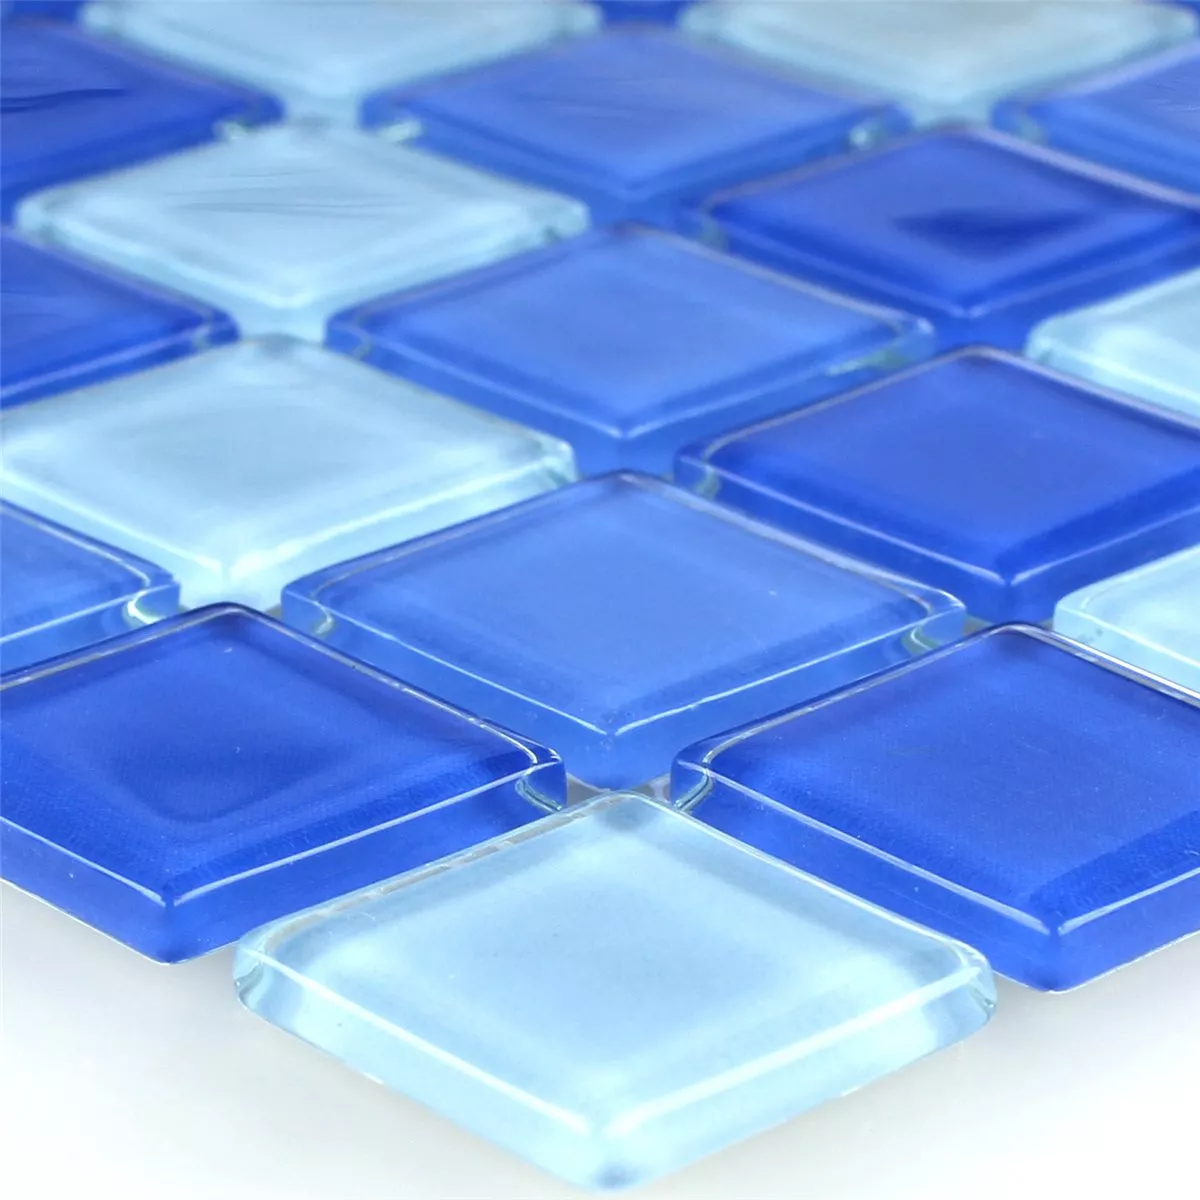 Padrão de Azulejo Mosaico Vidro Azul Claro 